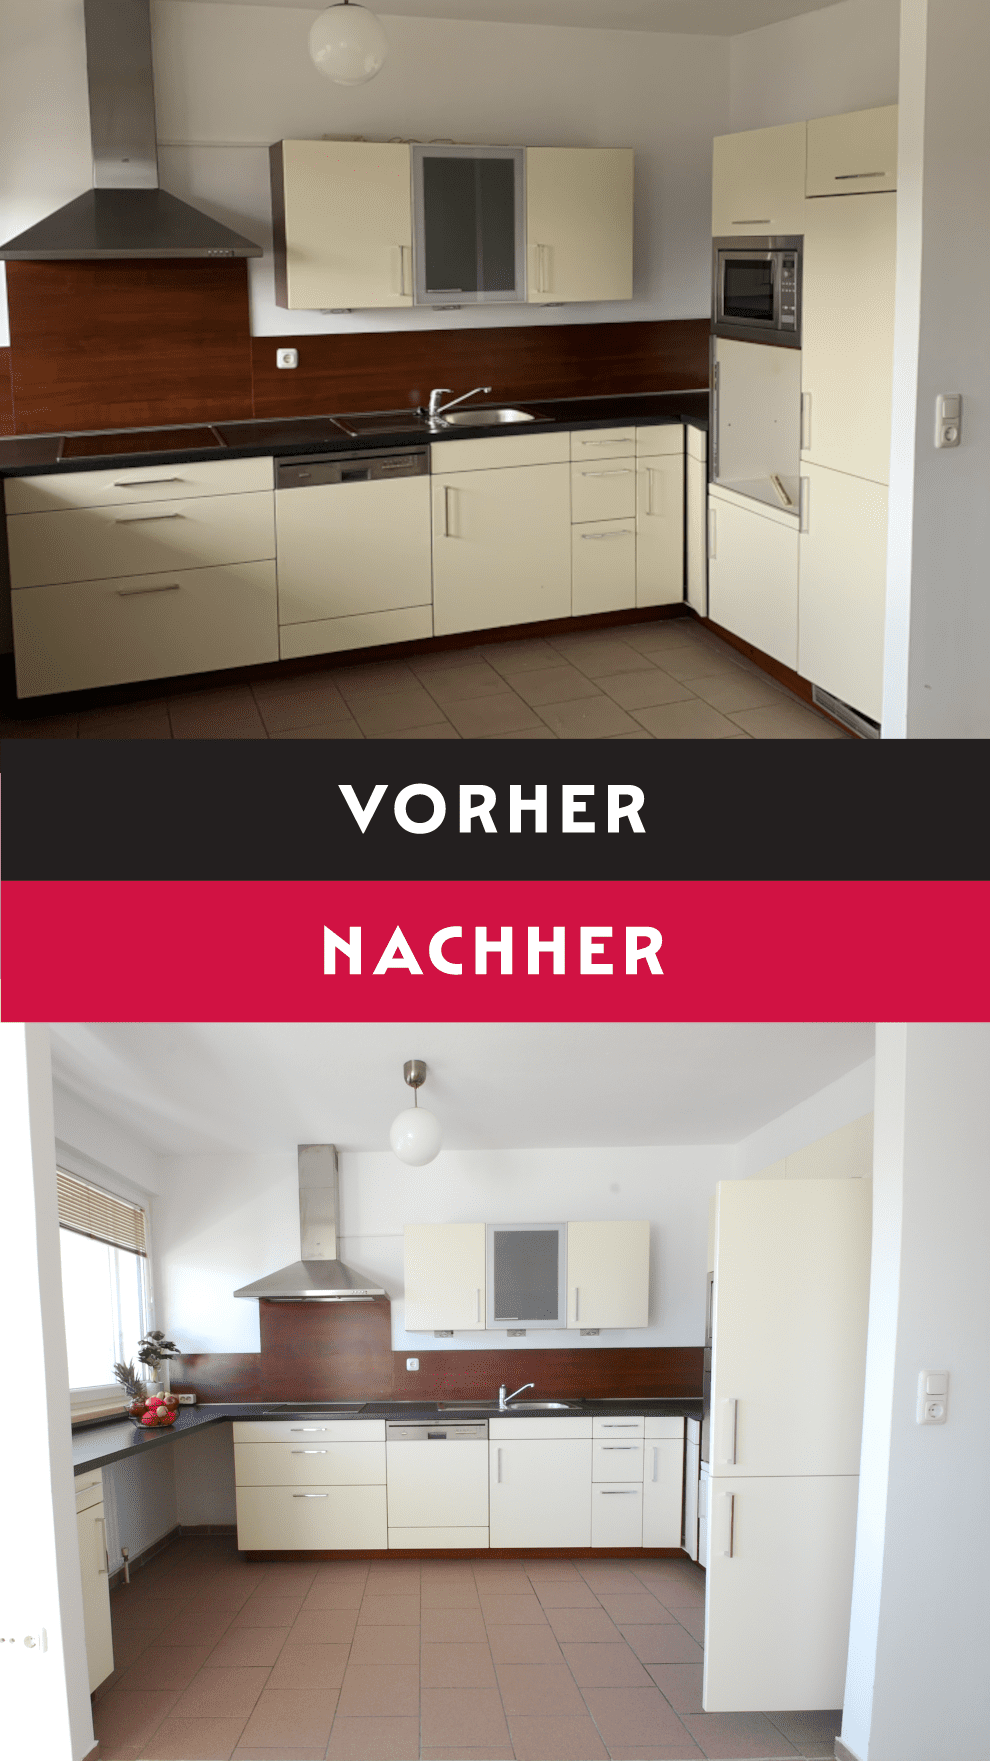 Eine Fotomontage mit Vorher-Nachher-Vergleich einer großen, weißen Küche mit grauem Boden, braunen Wandfliesen und einer großen Abzugshaube